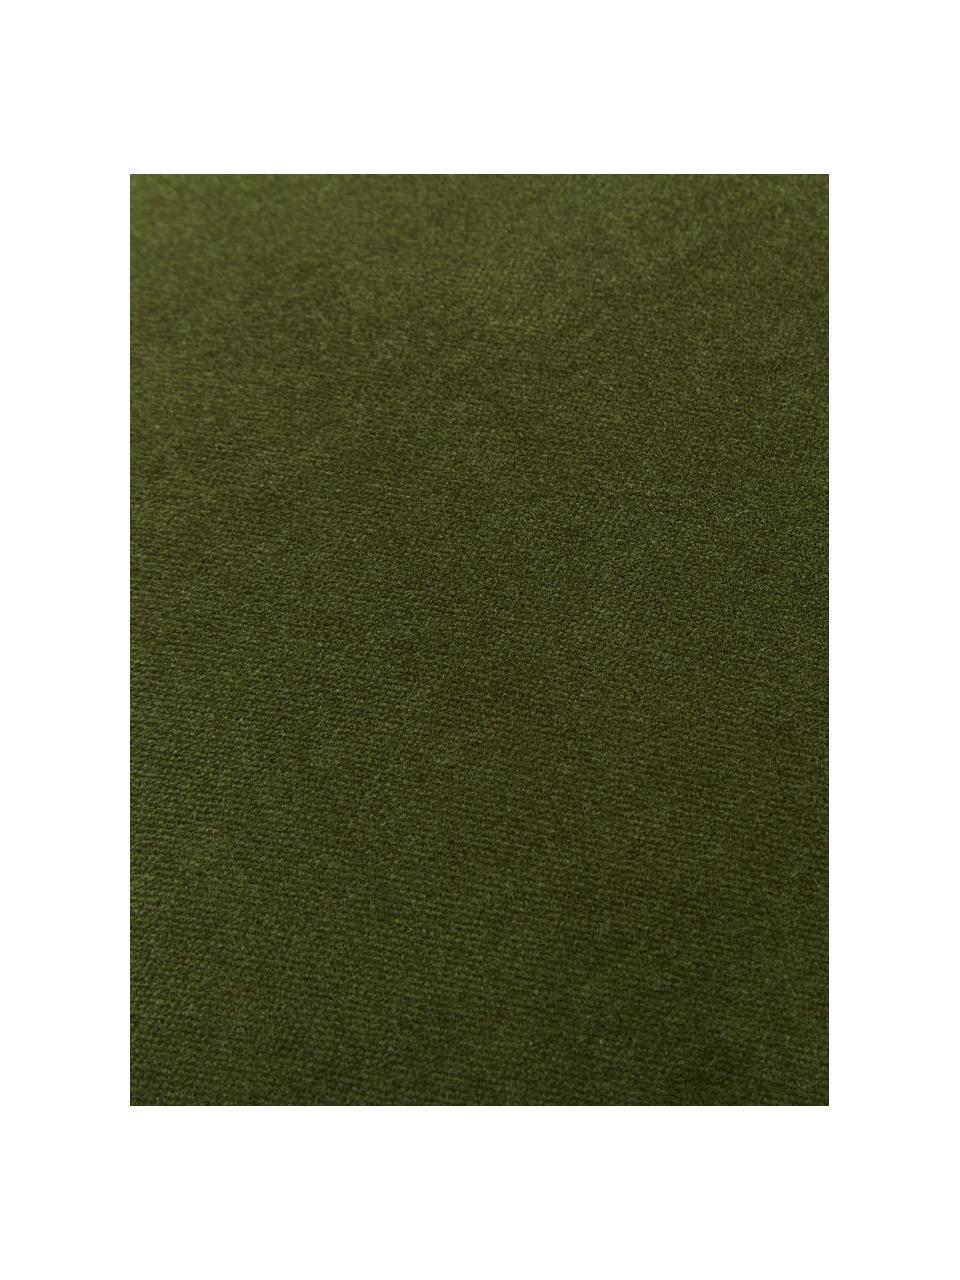 Housse de coussin rectangulaire velours vert mousse Dana, 100 % velours de coton, Vert mousse, larg. 30 x long. 50 cm